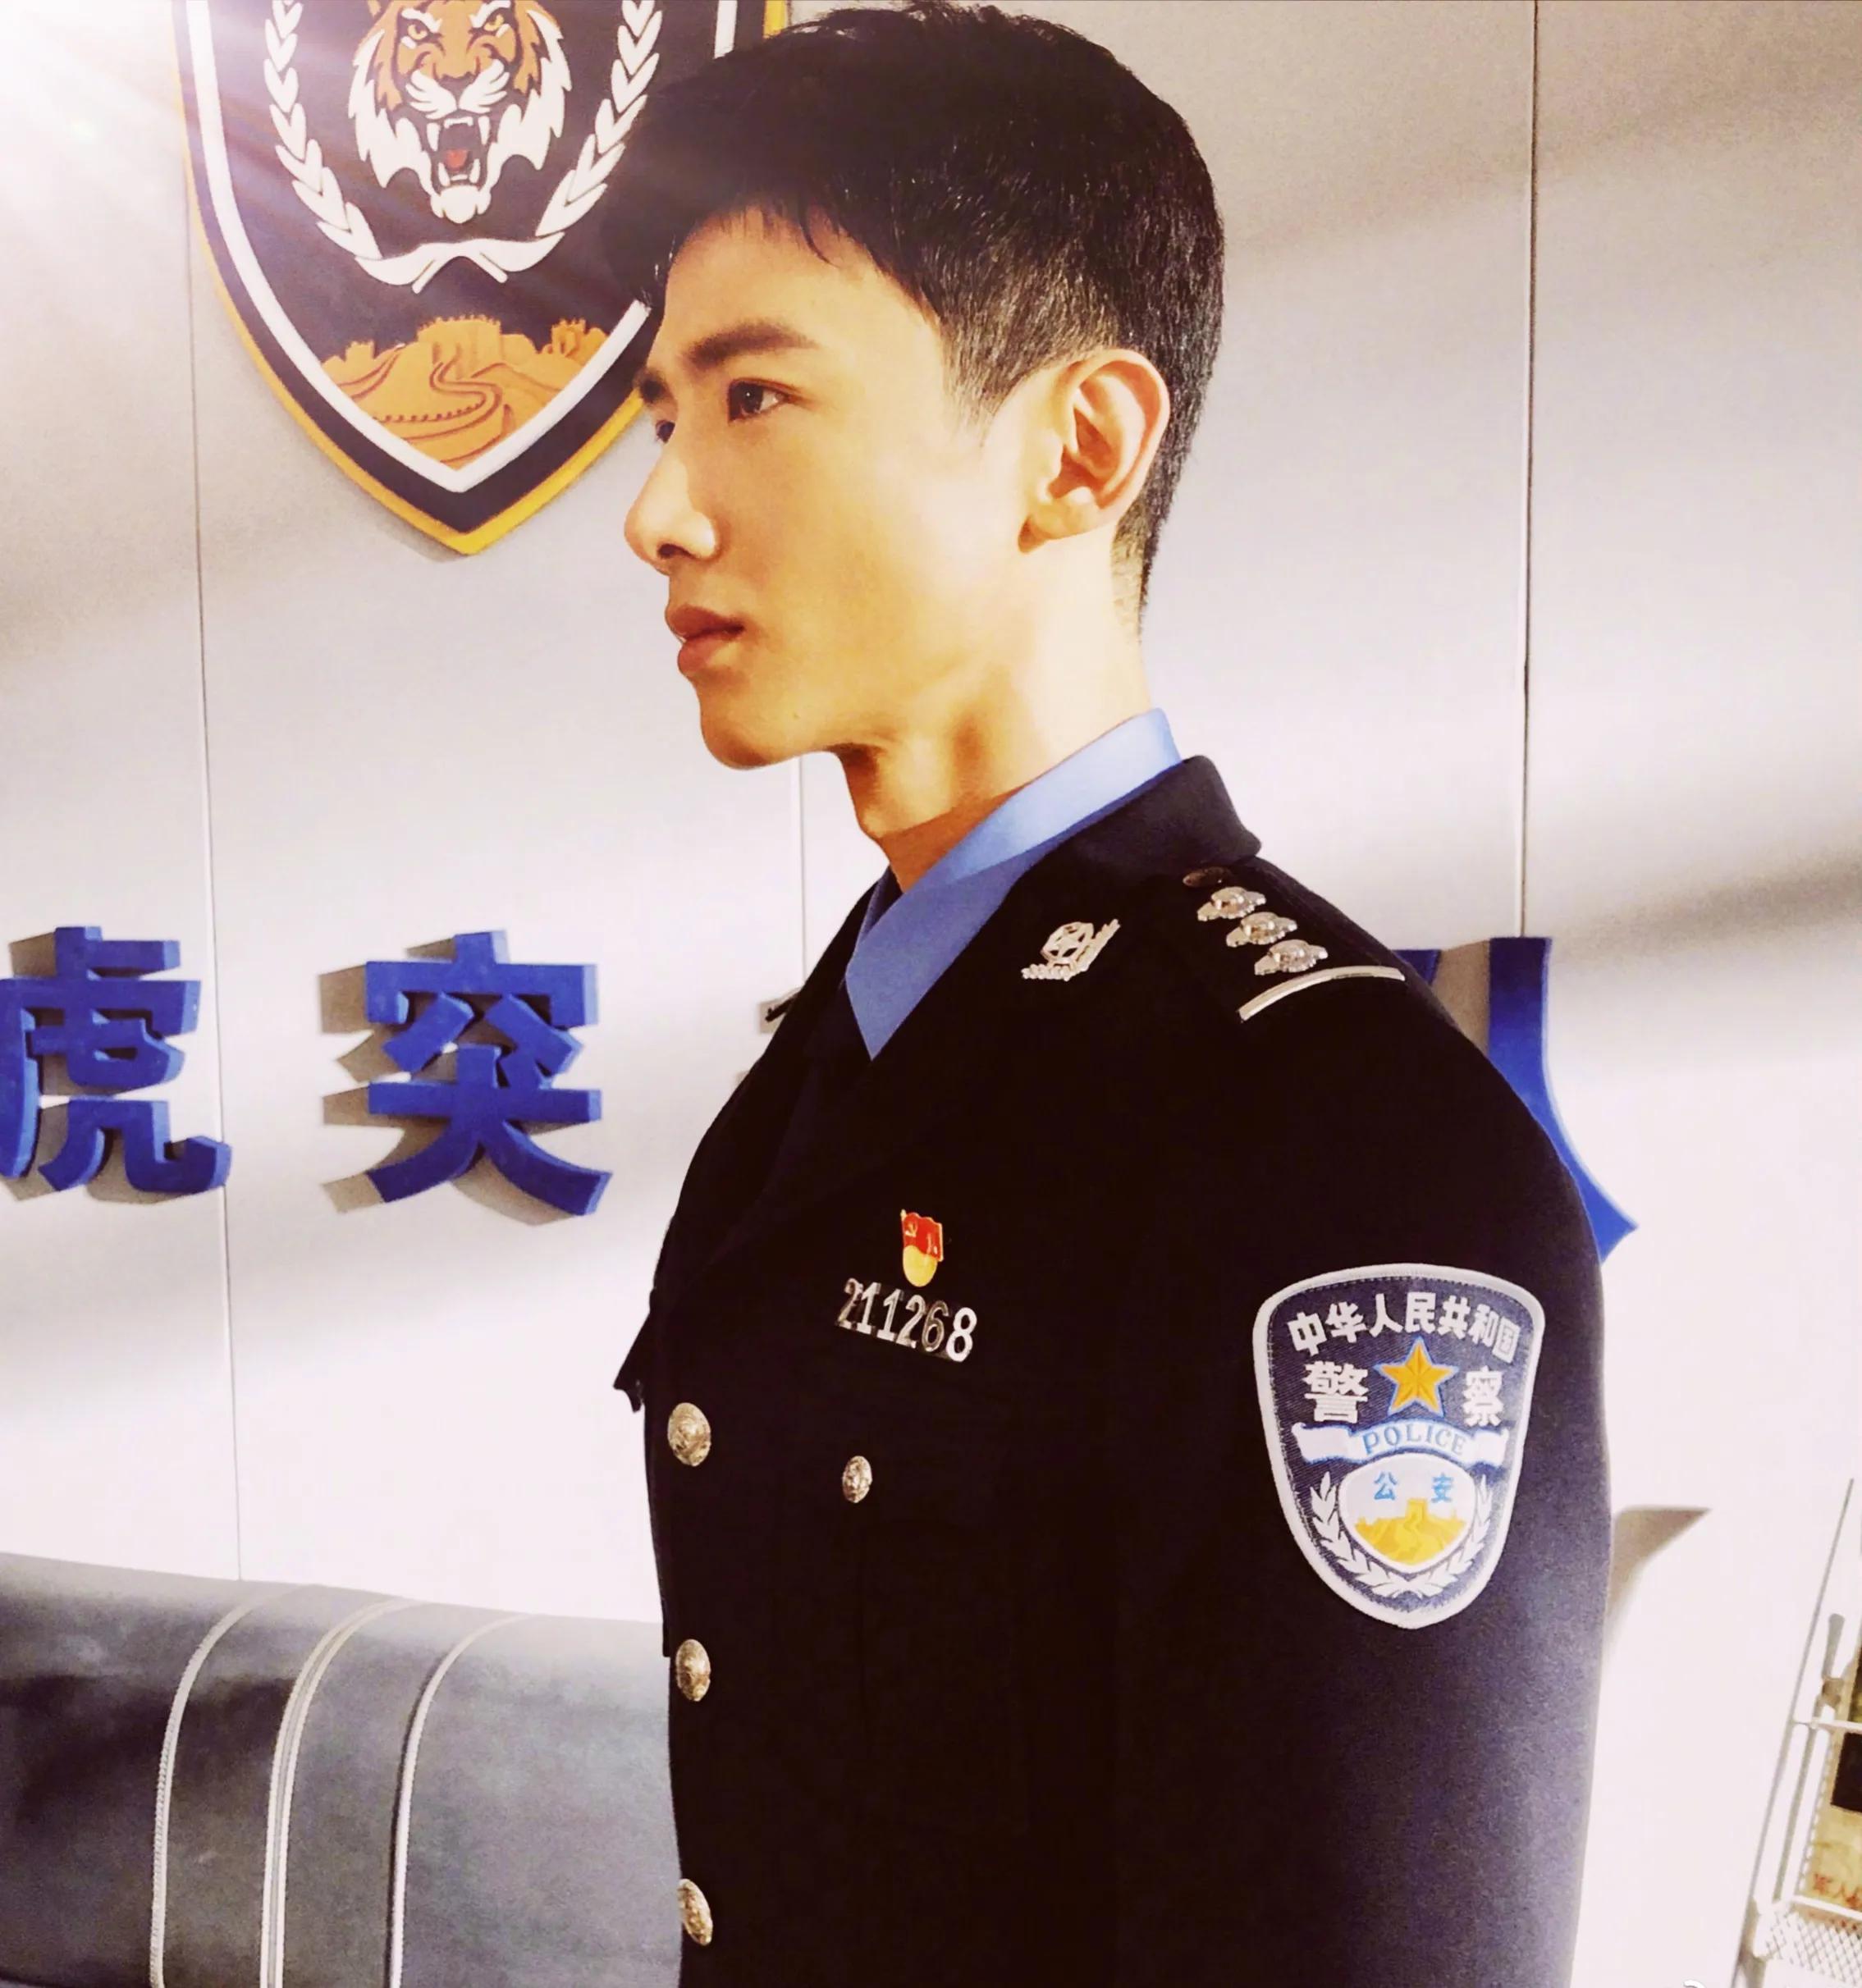 The uniform illuminates Bai Jingting